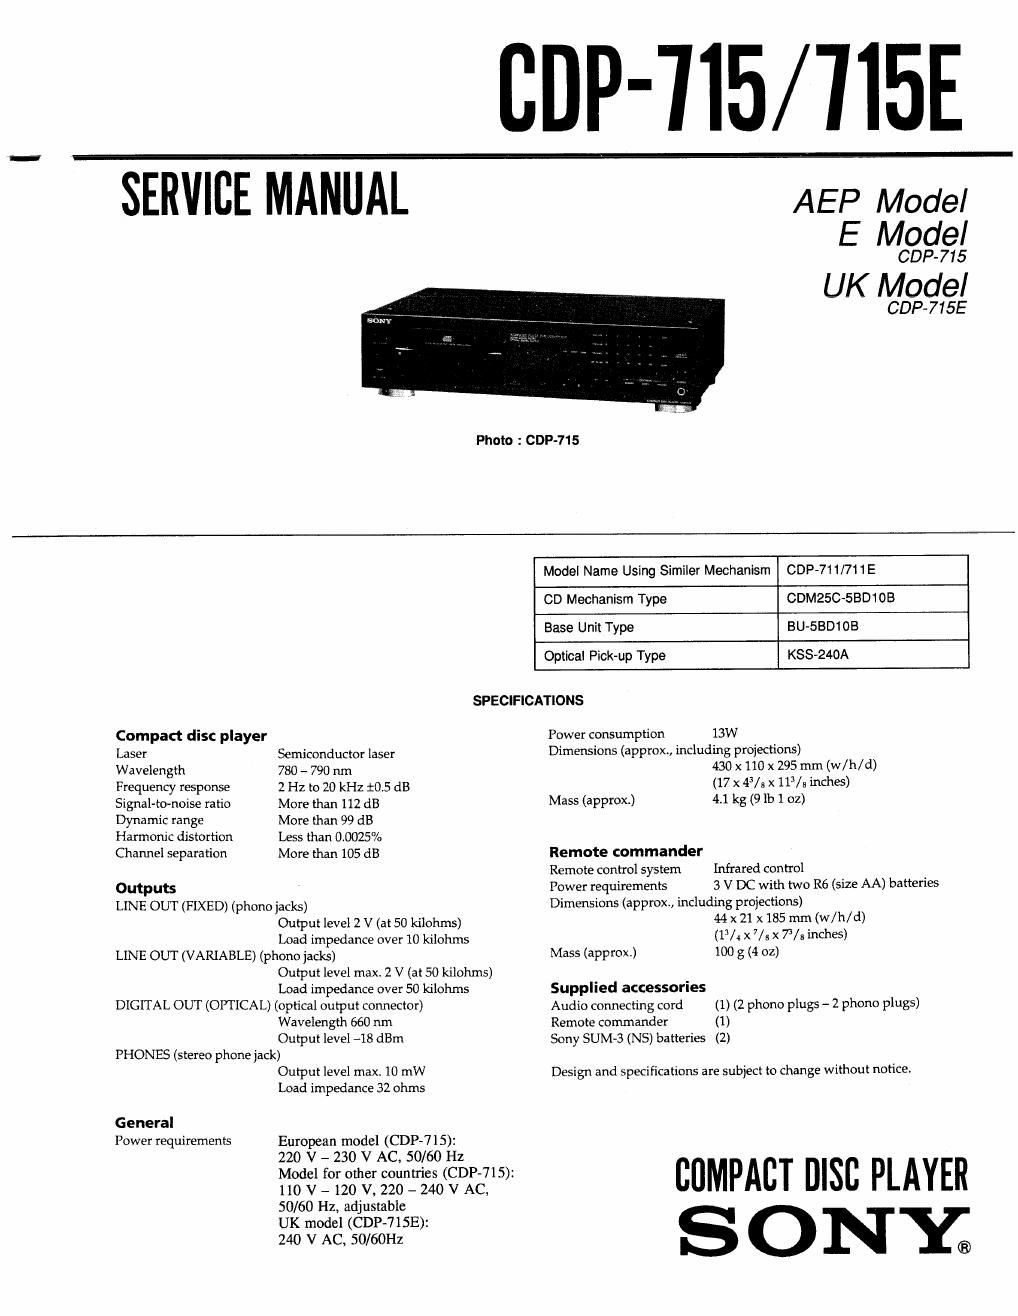 sony cdp 715 service manual